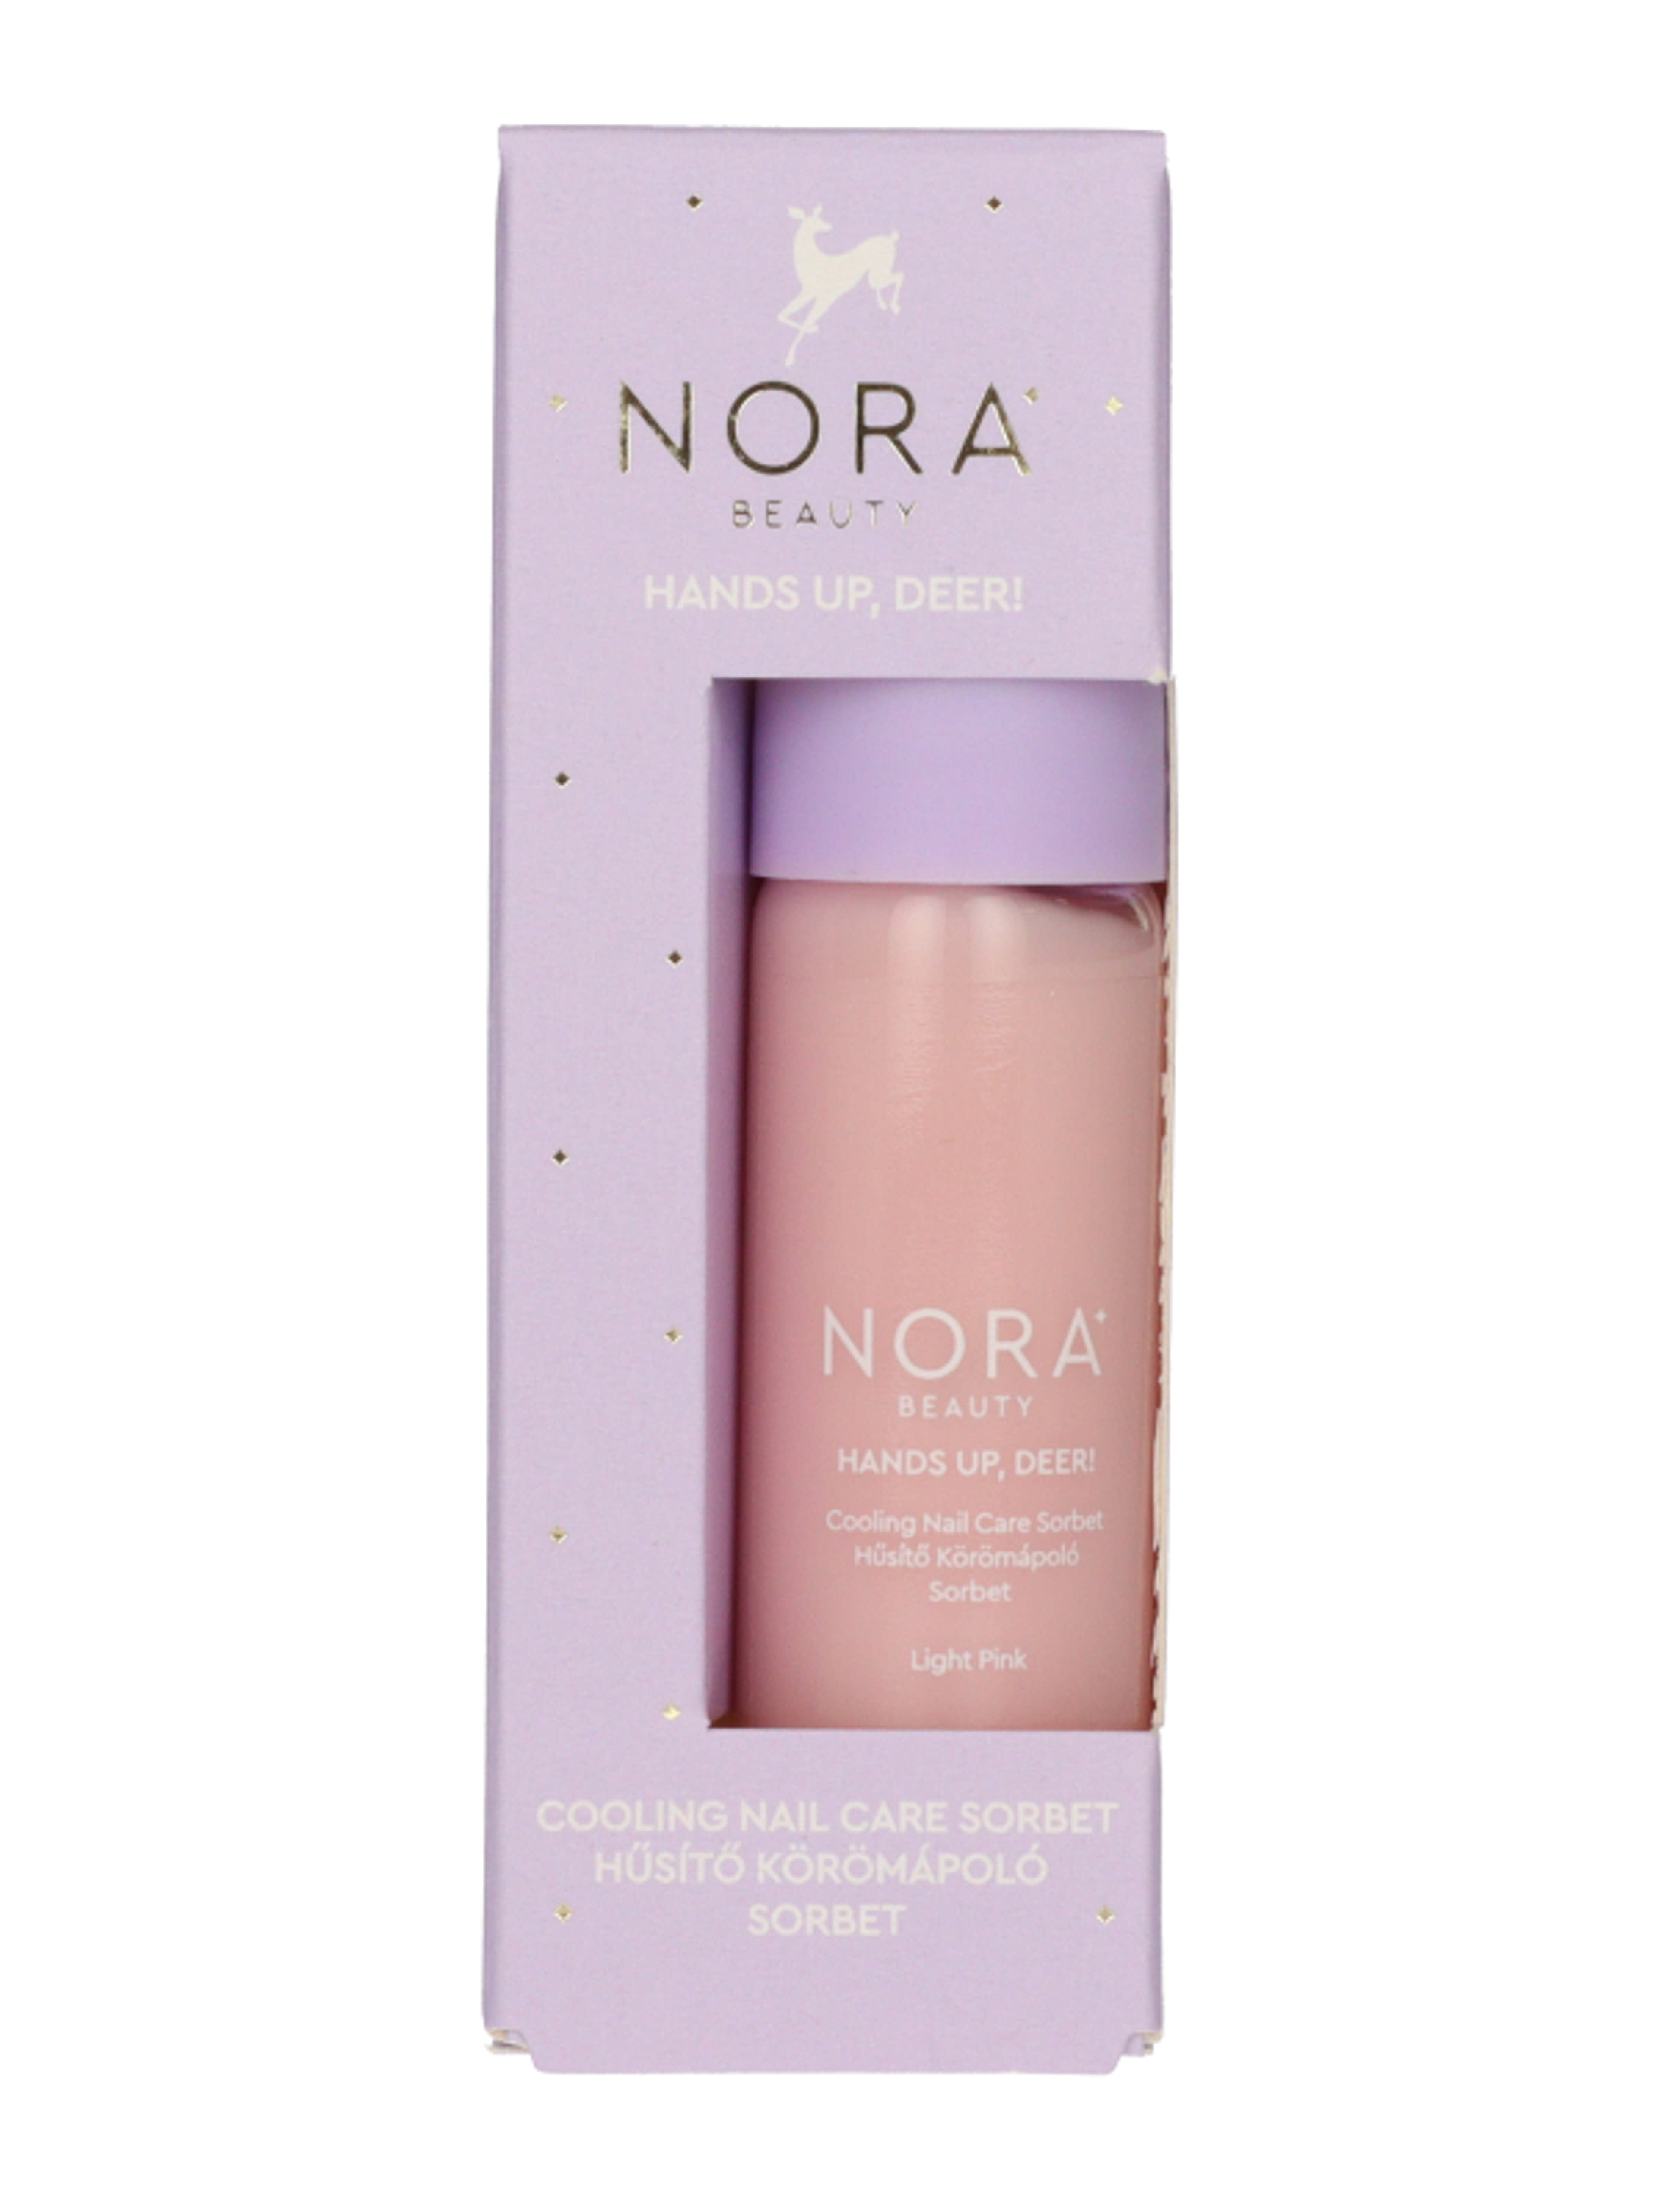 Nora Beauty Sobret Light Pink hűsítő körömápoló - 1 db